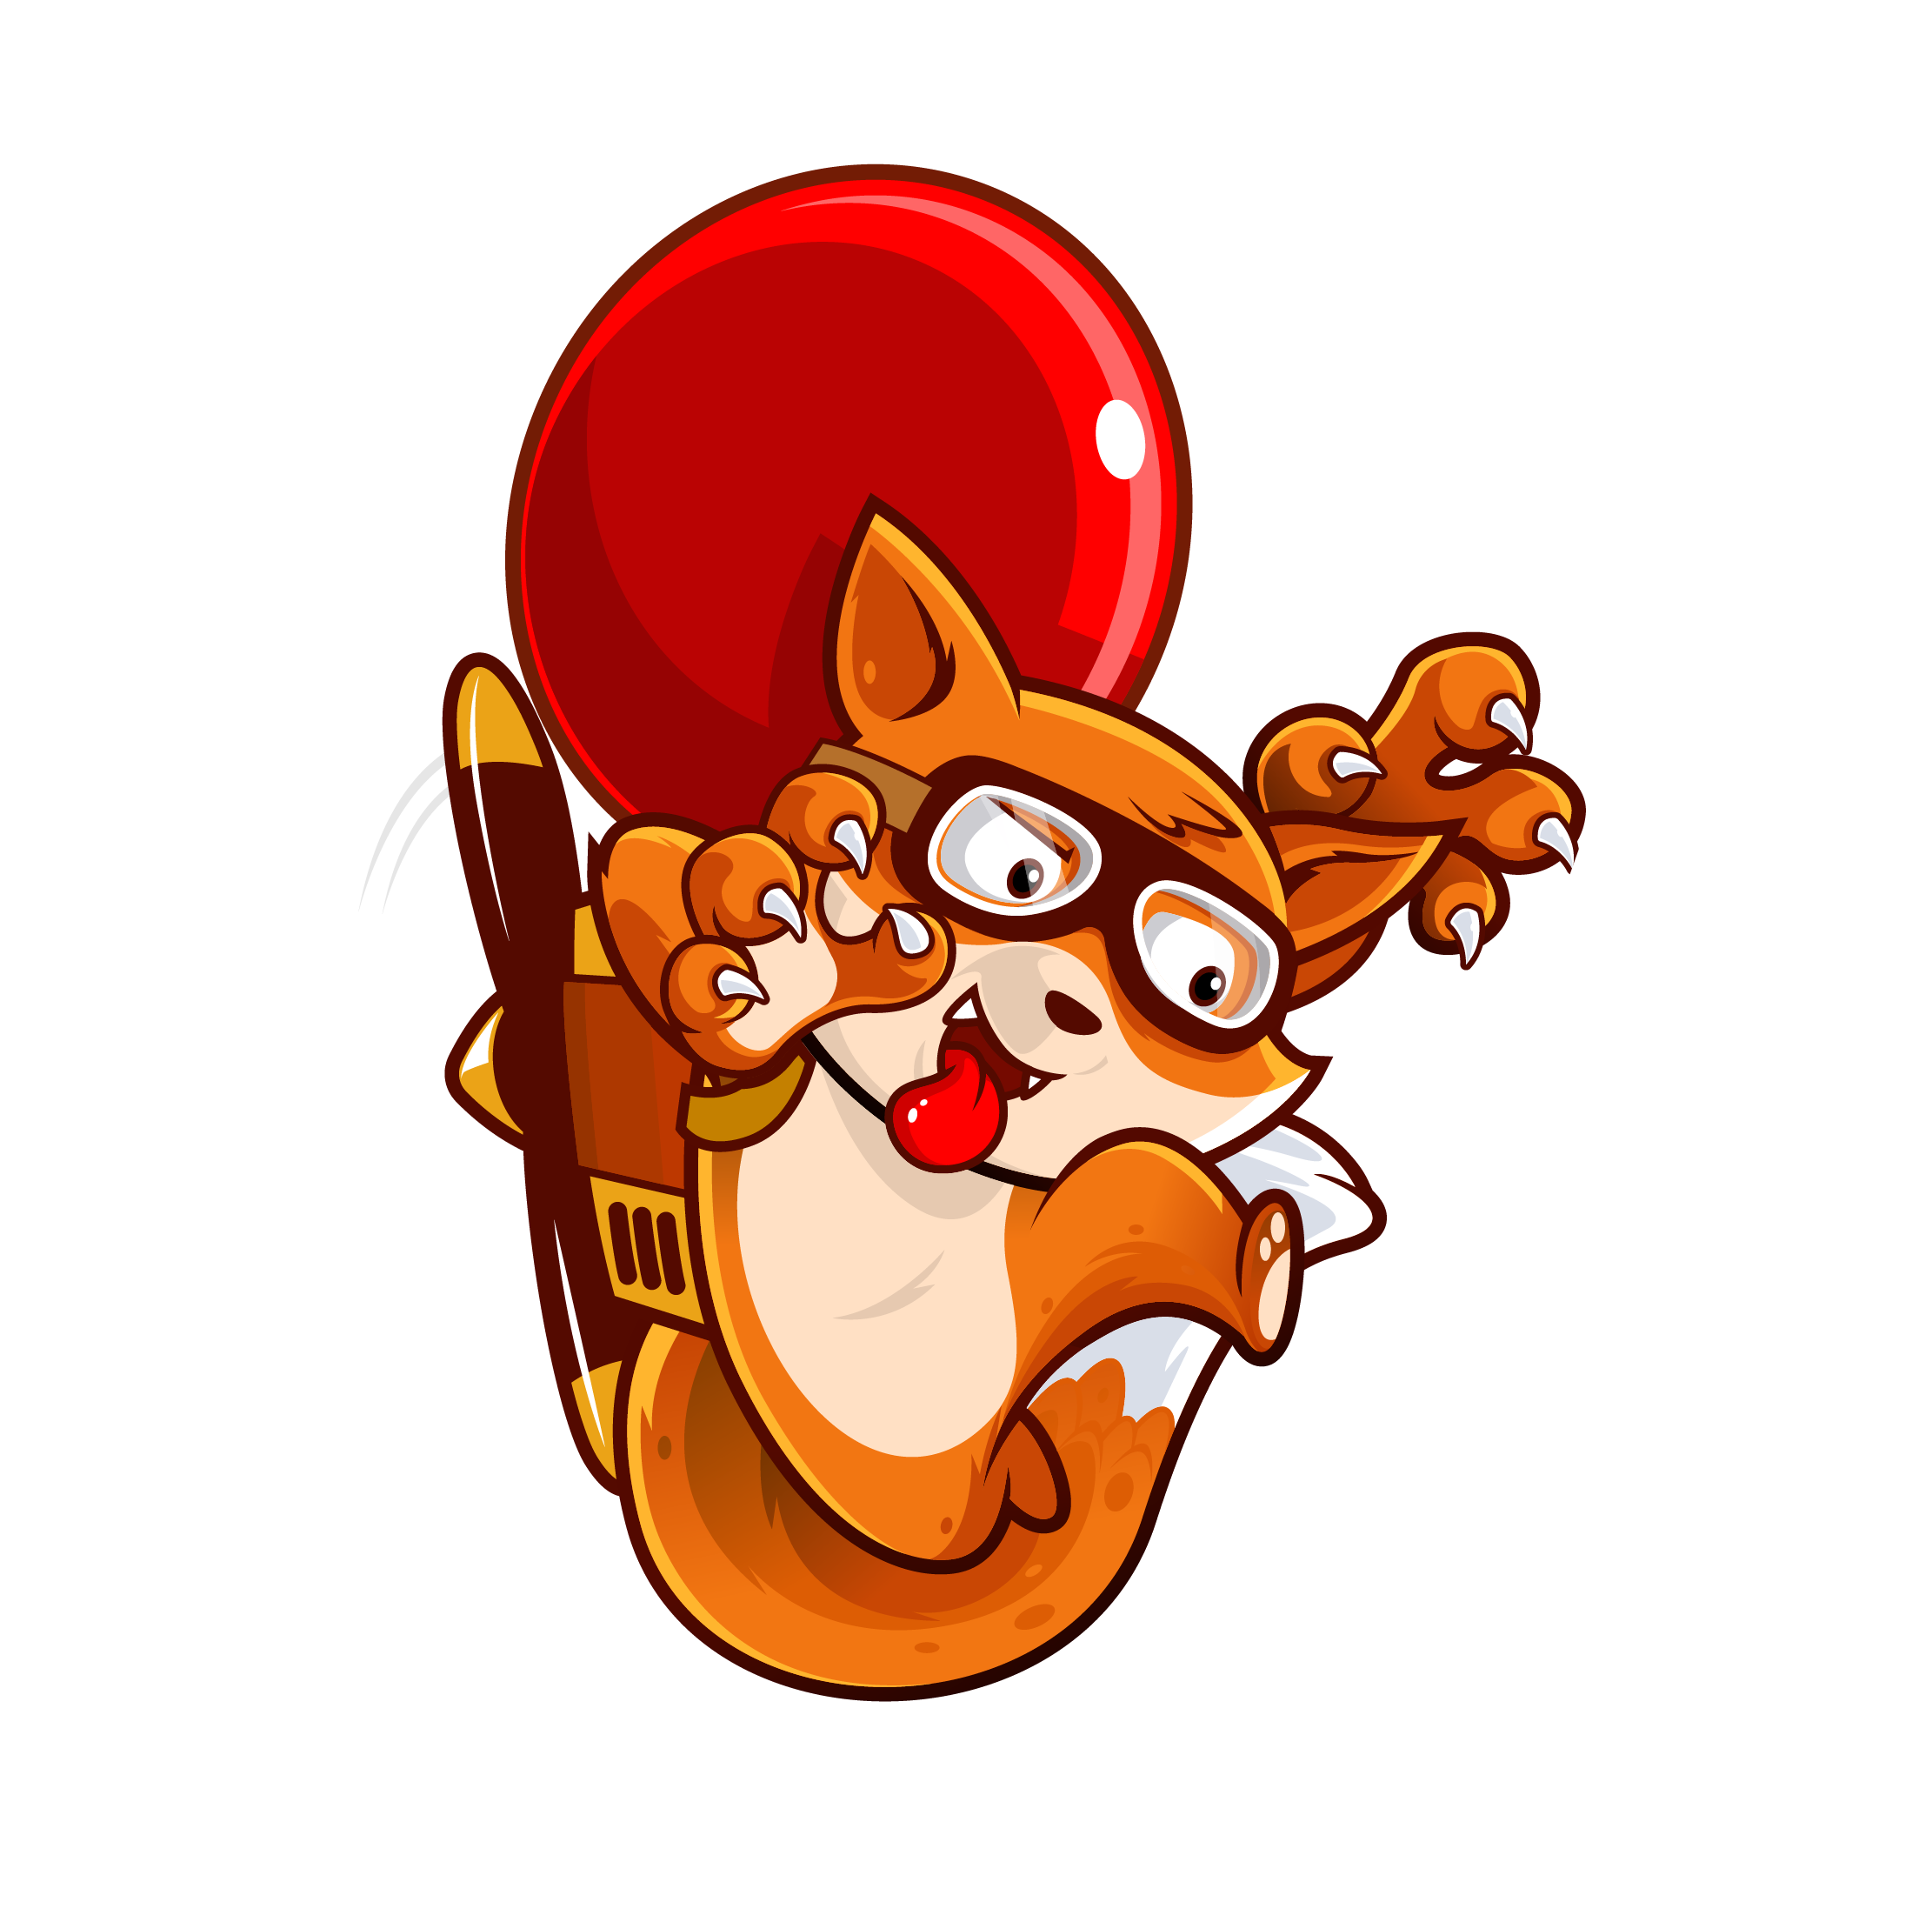 Balloon Fighter fox